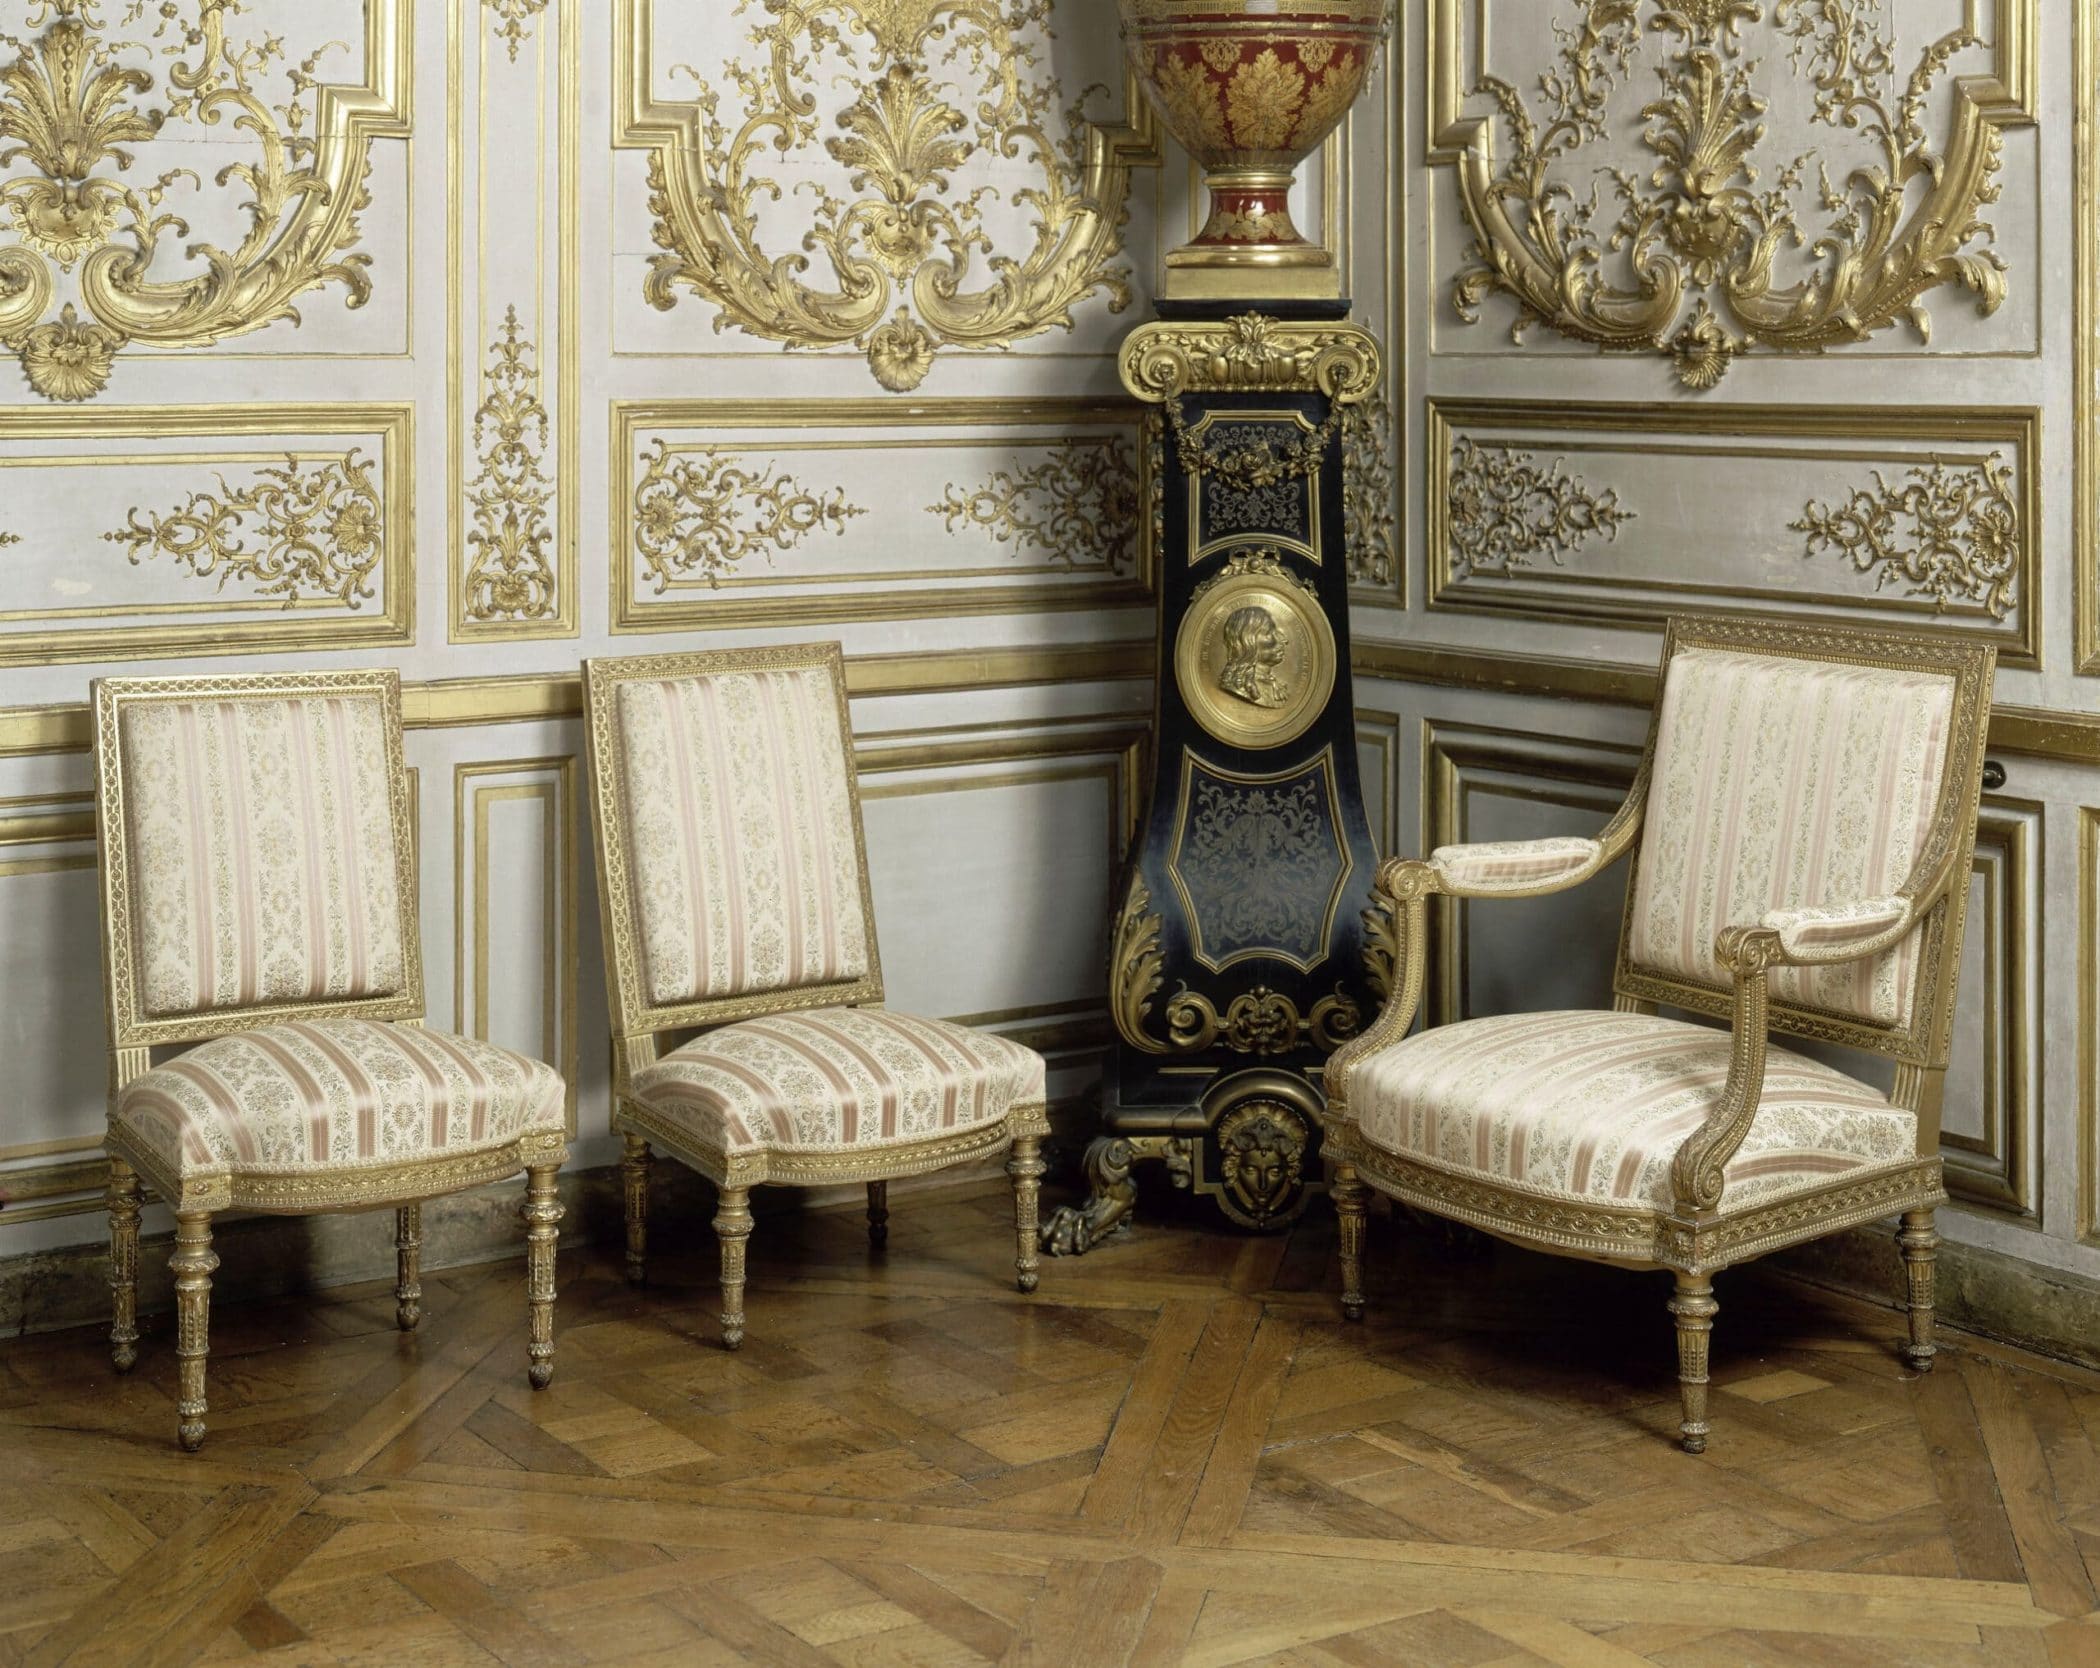 Fauteuil et chaises d'époque Louis XVI par Georges Jacob, 1787. Salon de musique du château de Chantilly © Château de Chantilly